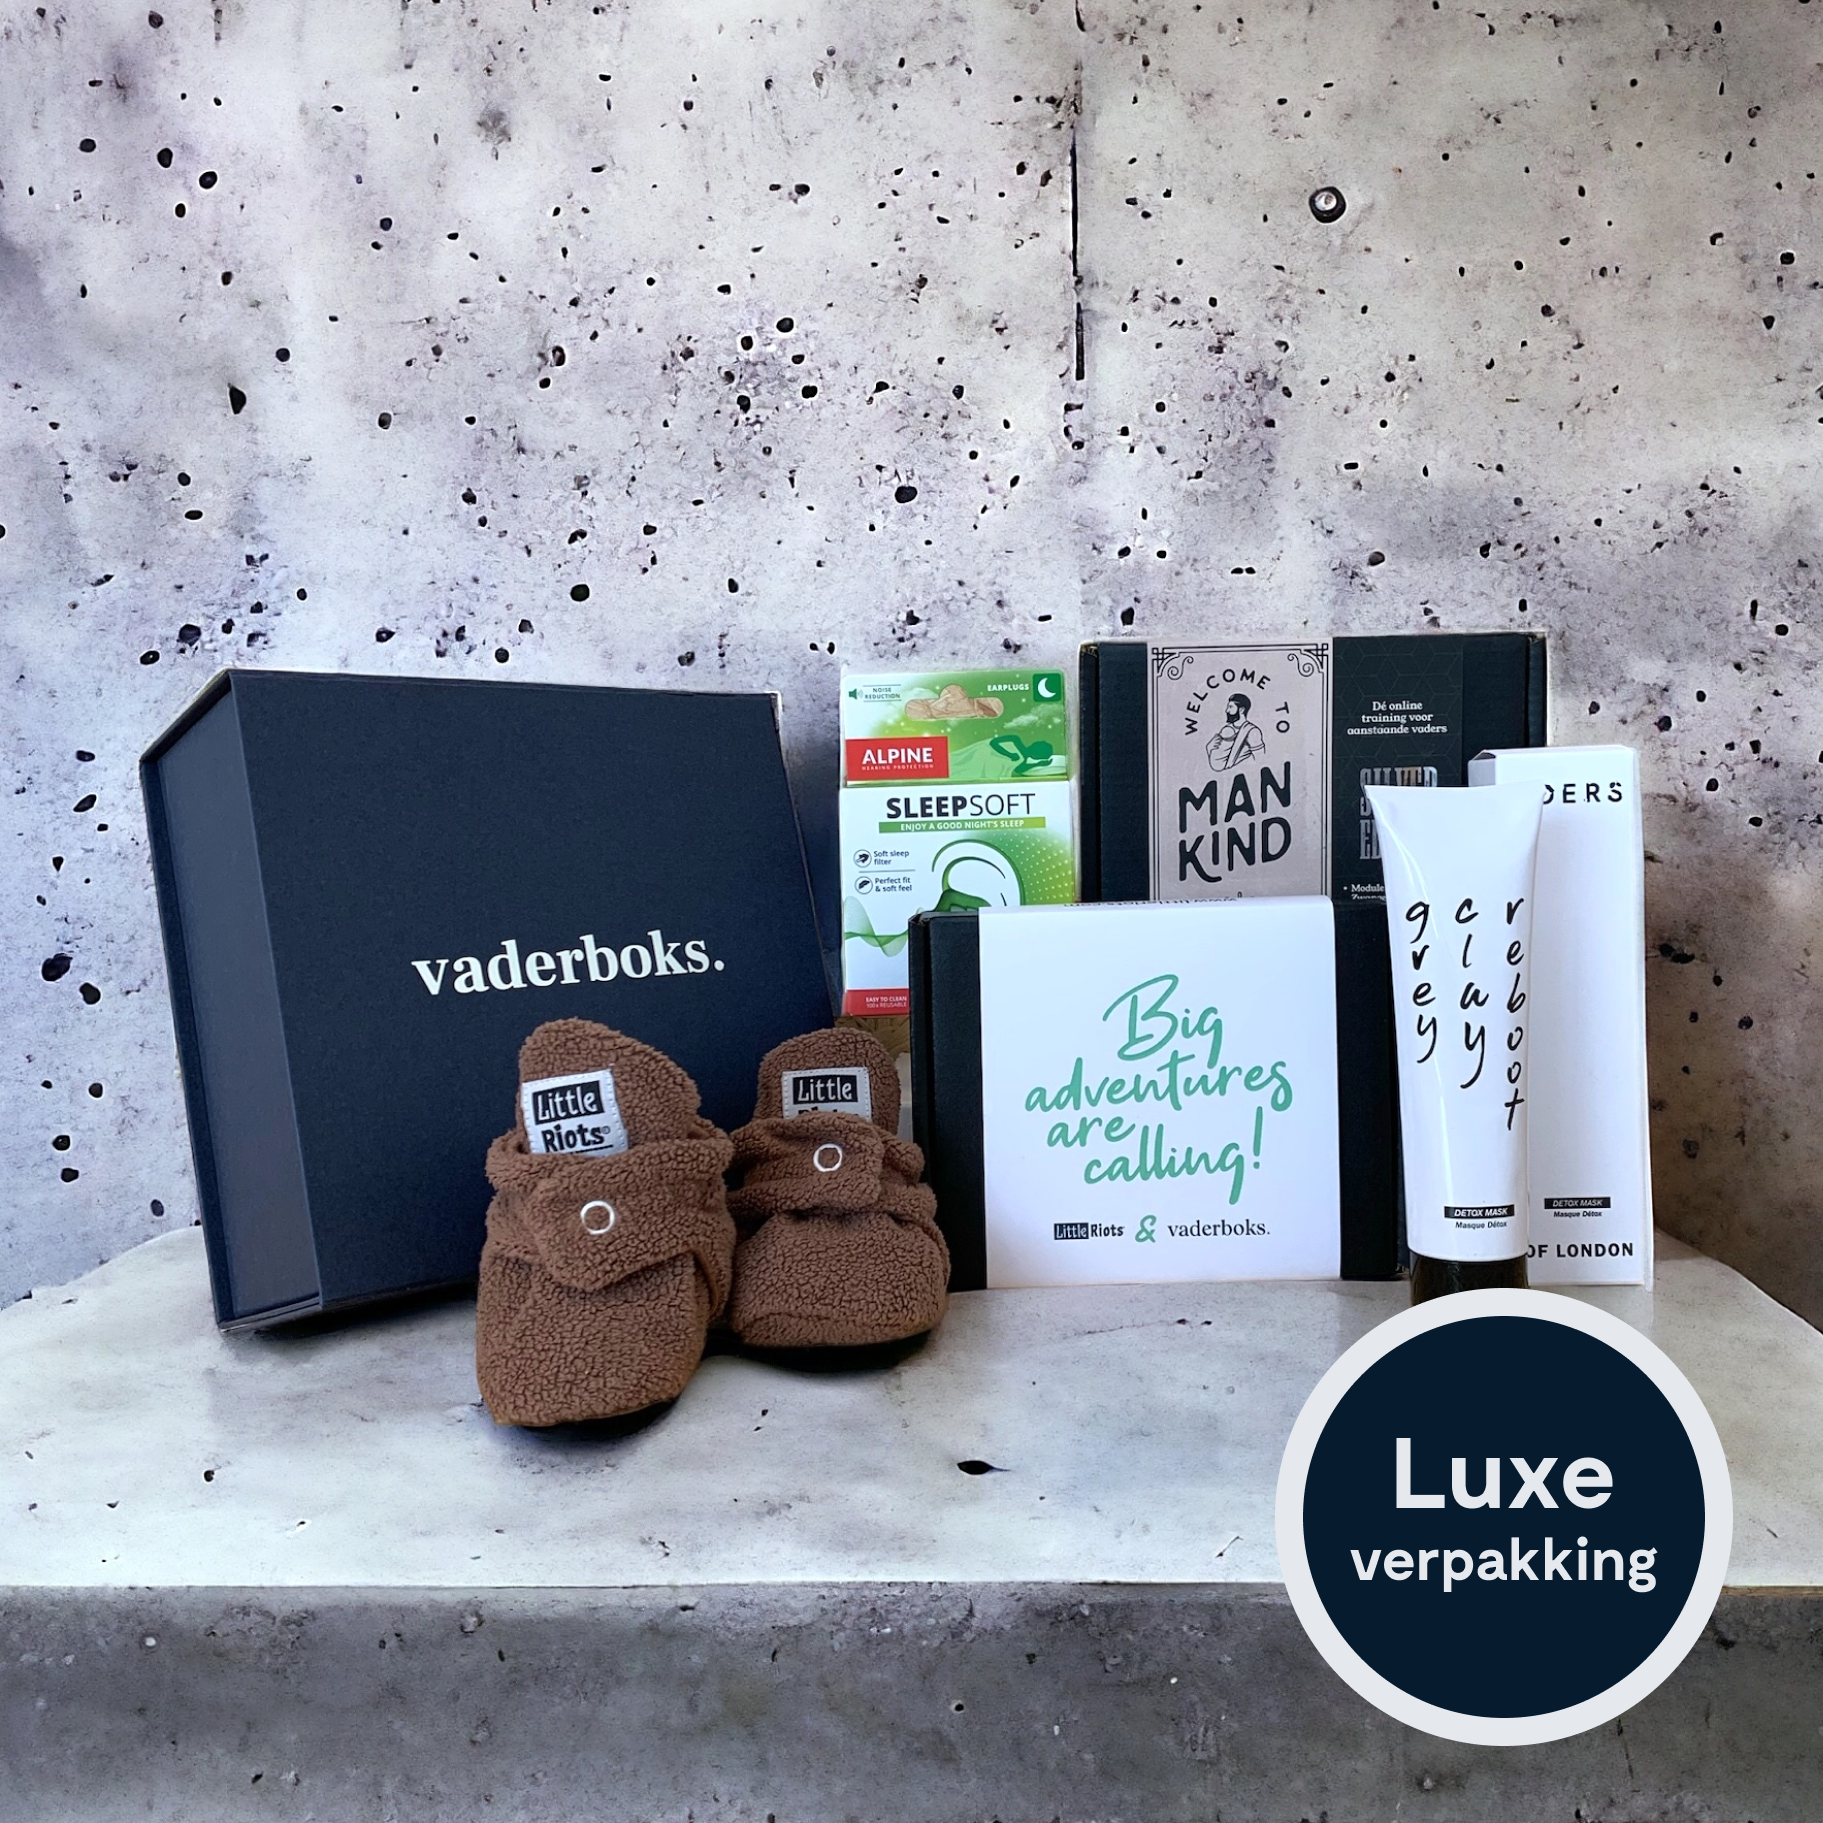 Zachte Landing Vaderboks luxe verpakking en producten uitgestald cadeau nieuwe vaders